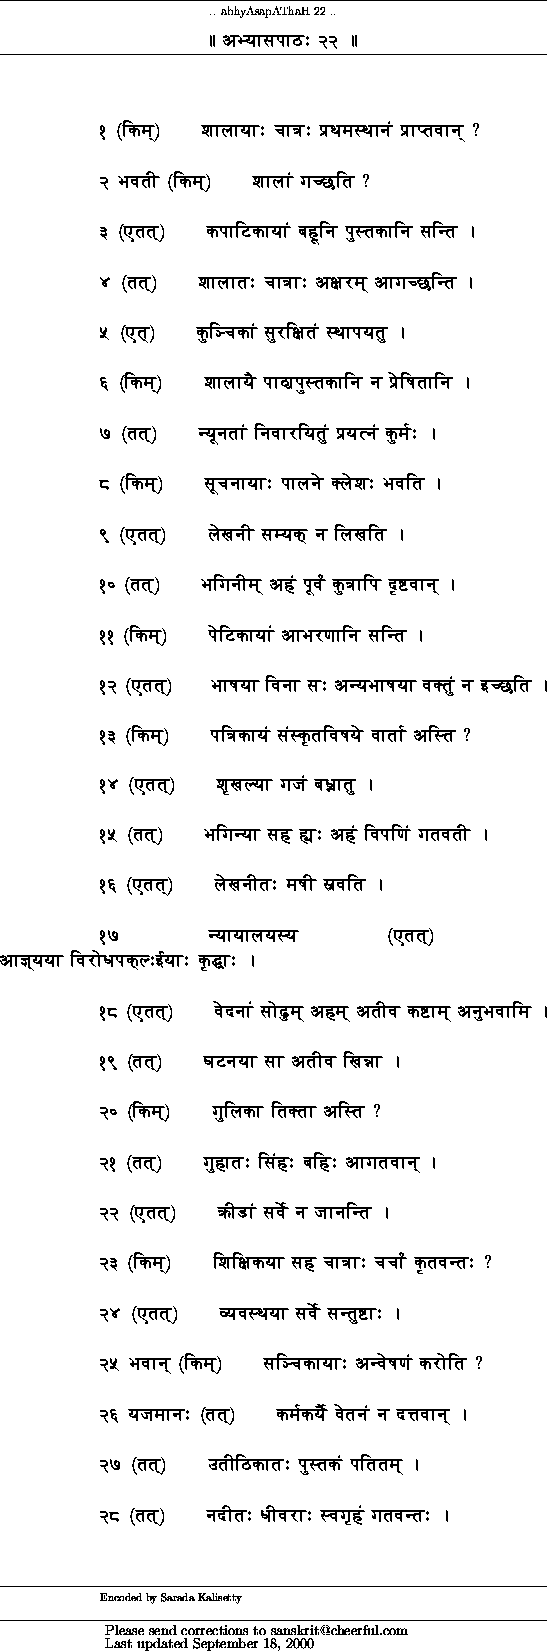 Spoken Sanskrit Lessons Pdf